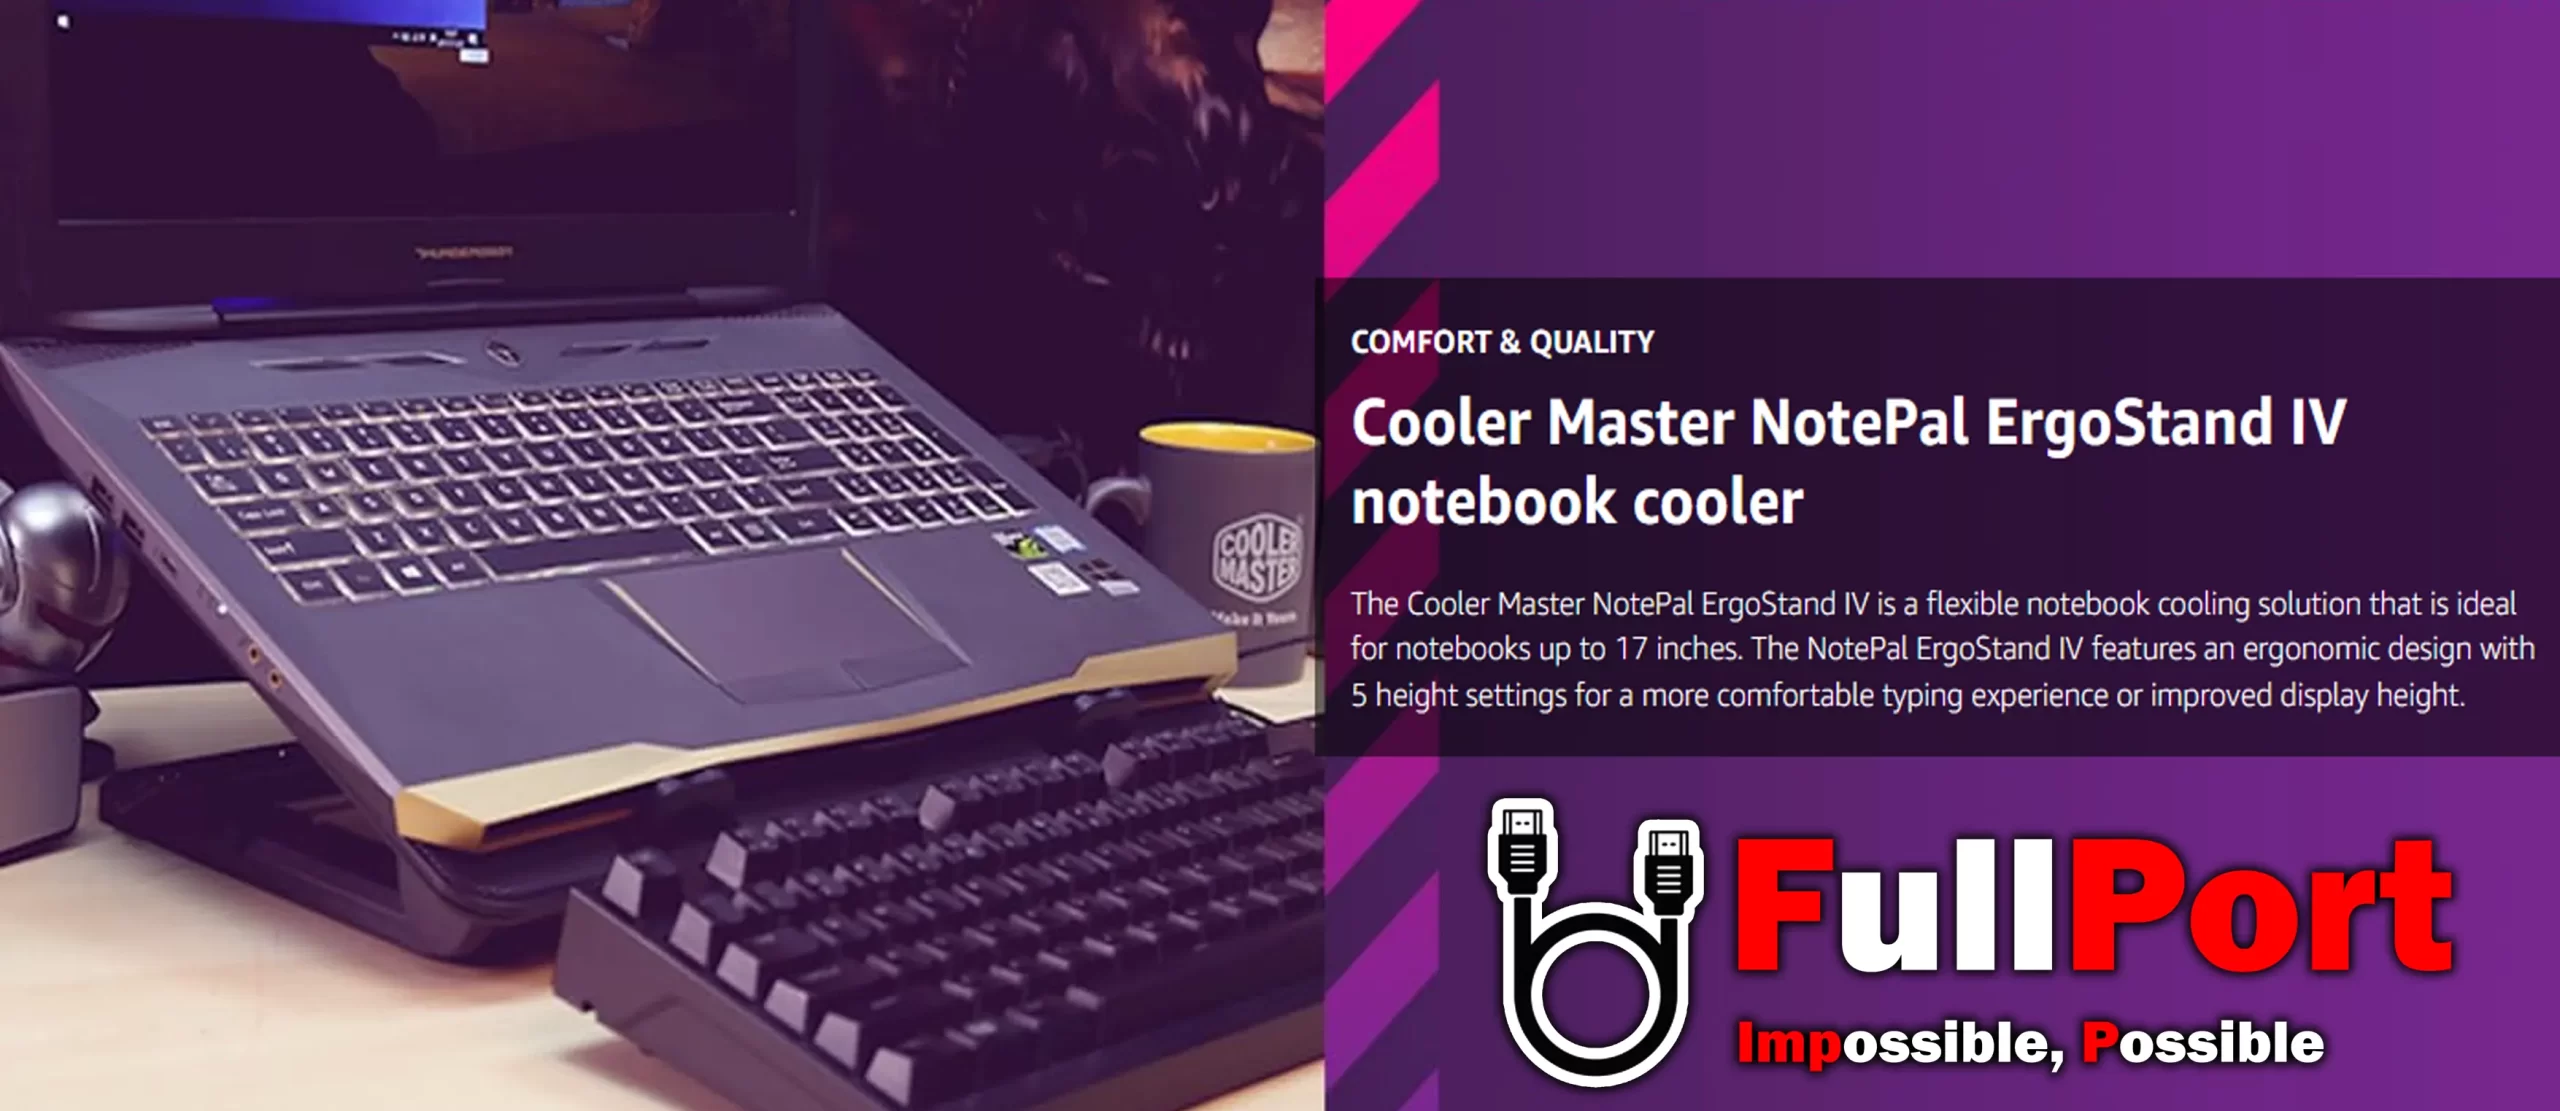 خرید پایه خنک کننده کولرمستر مدل Cooler Master NotePal ErgoStand IV R9-NBS-E42K-GP از فروشگاه اینترنتی فول پورت